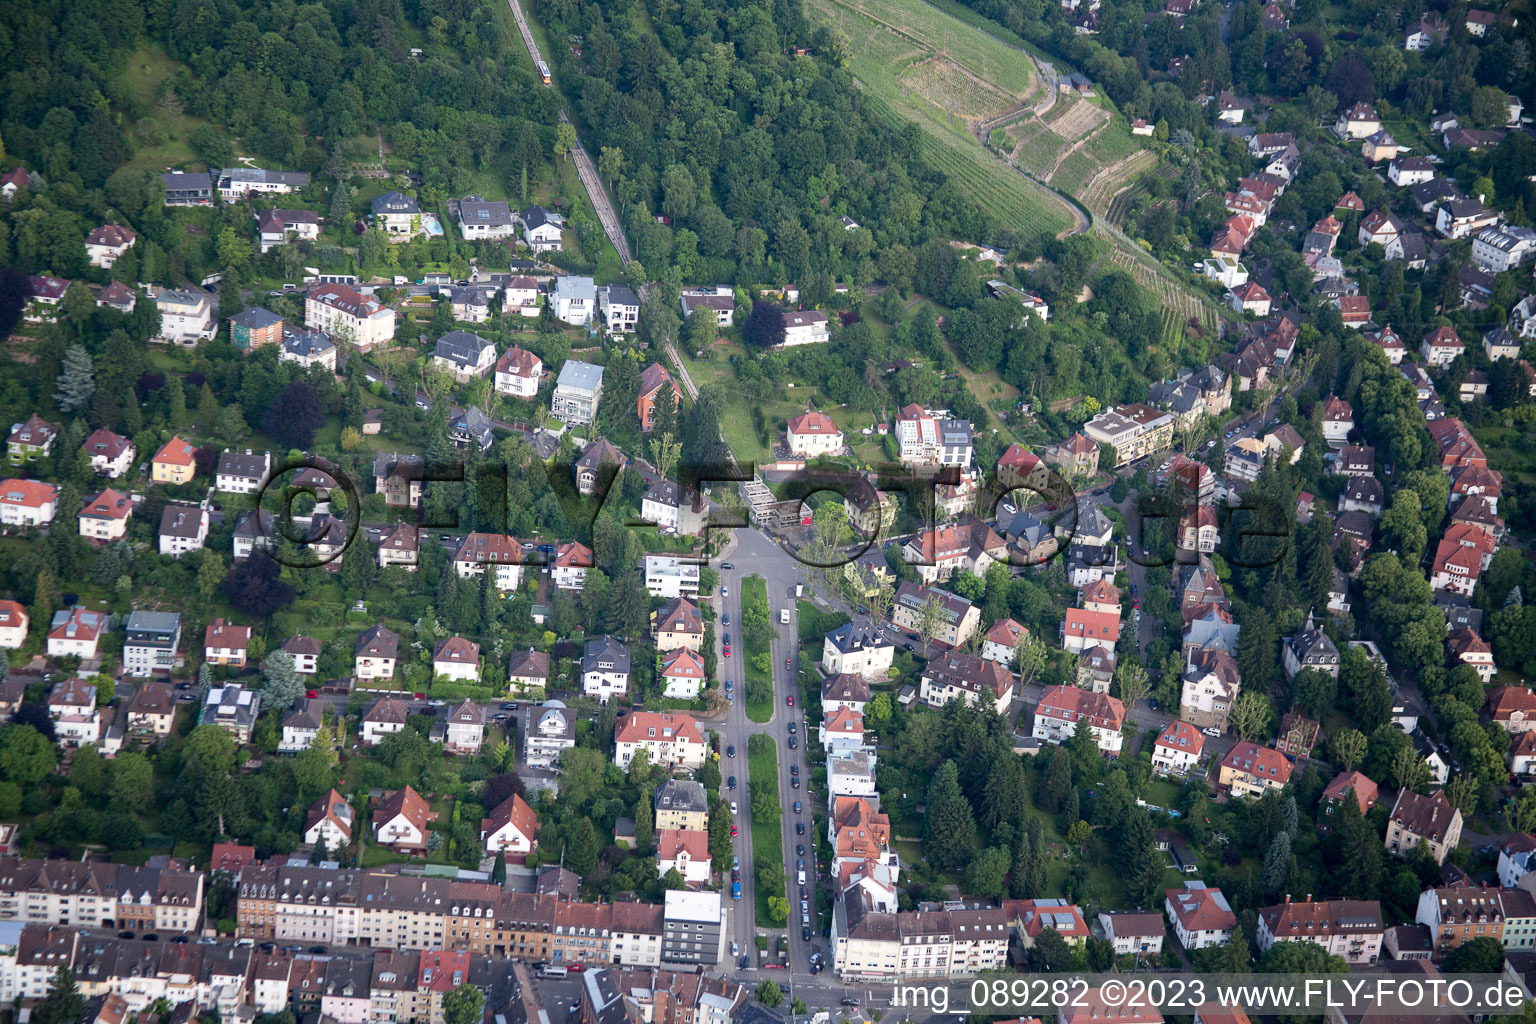 Luftbild von Turmbergbahn im Ortsteil Durlach in Karlsruhe im Bundesland Baden-Württemberg, Deutschland